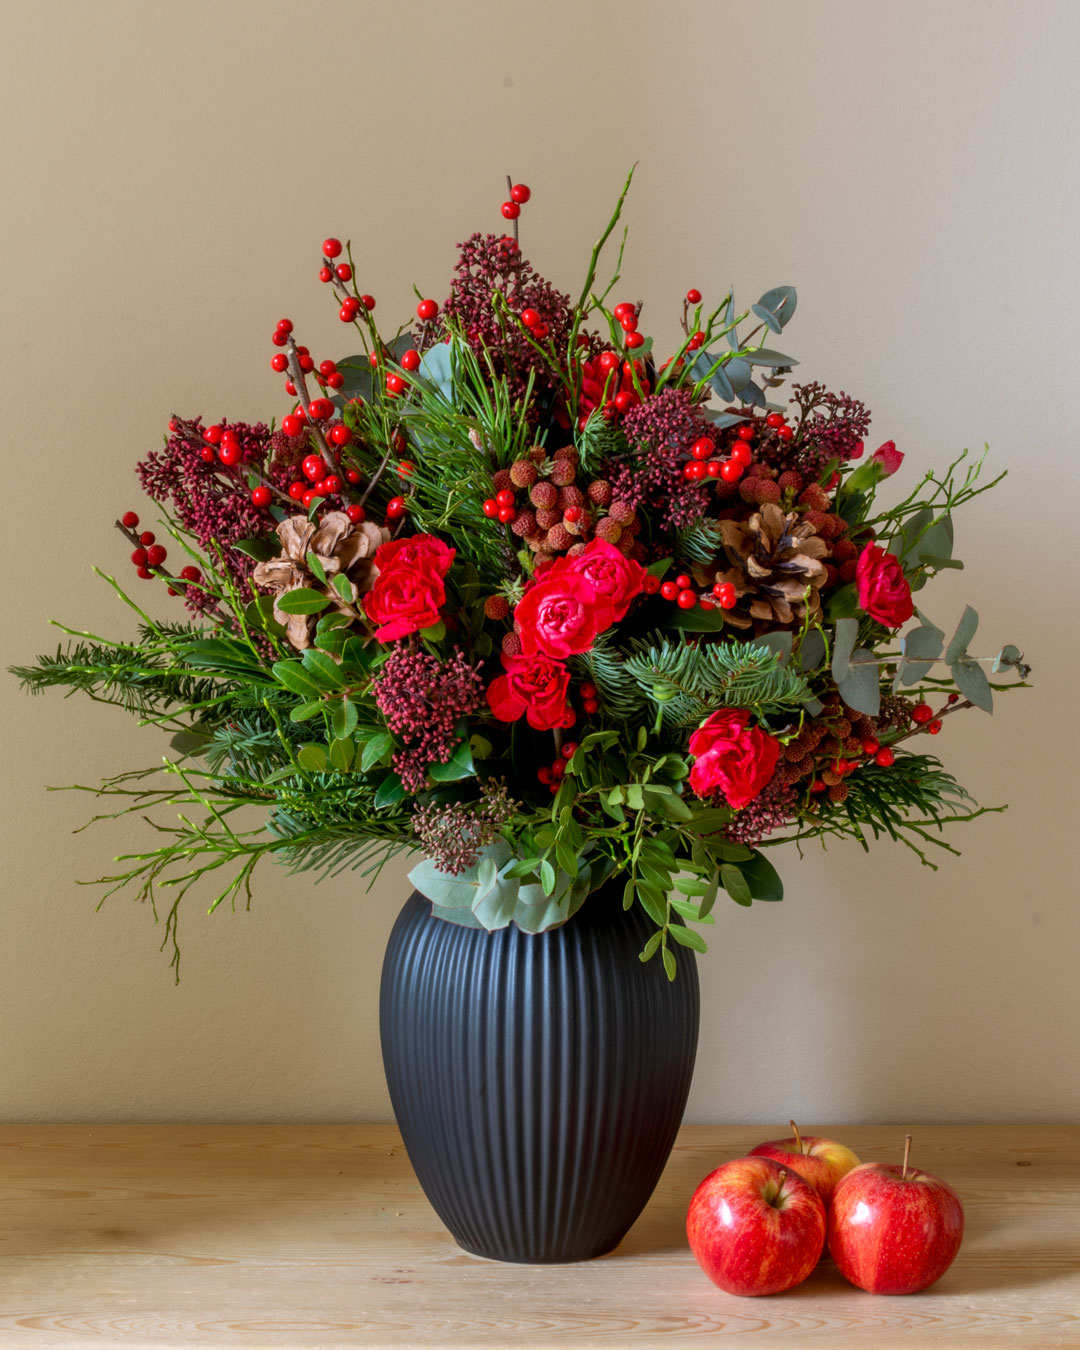 Sort vase fra Michael Andersen Keramik med røde blomster, gran og æbler